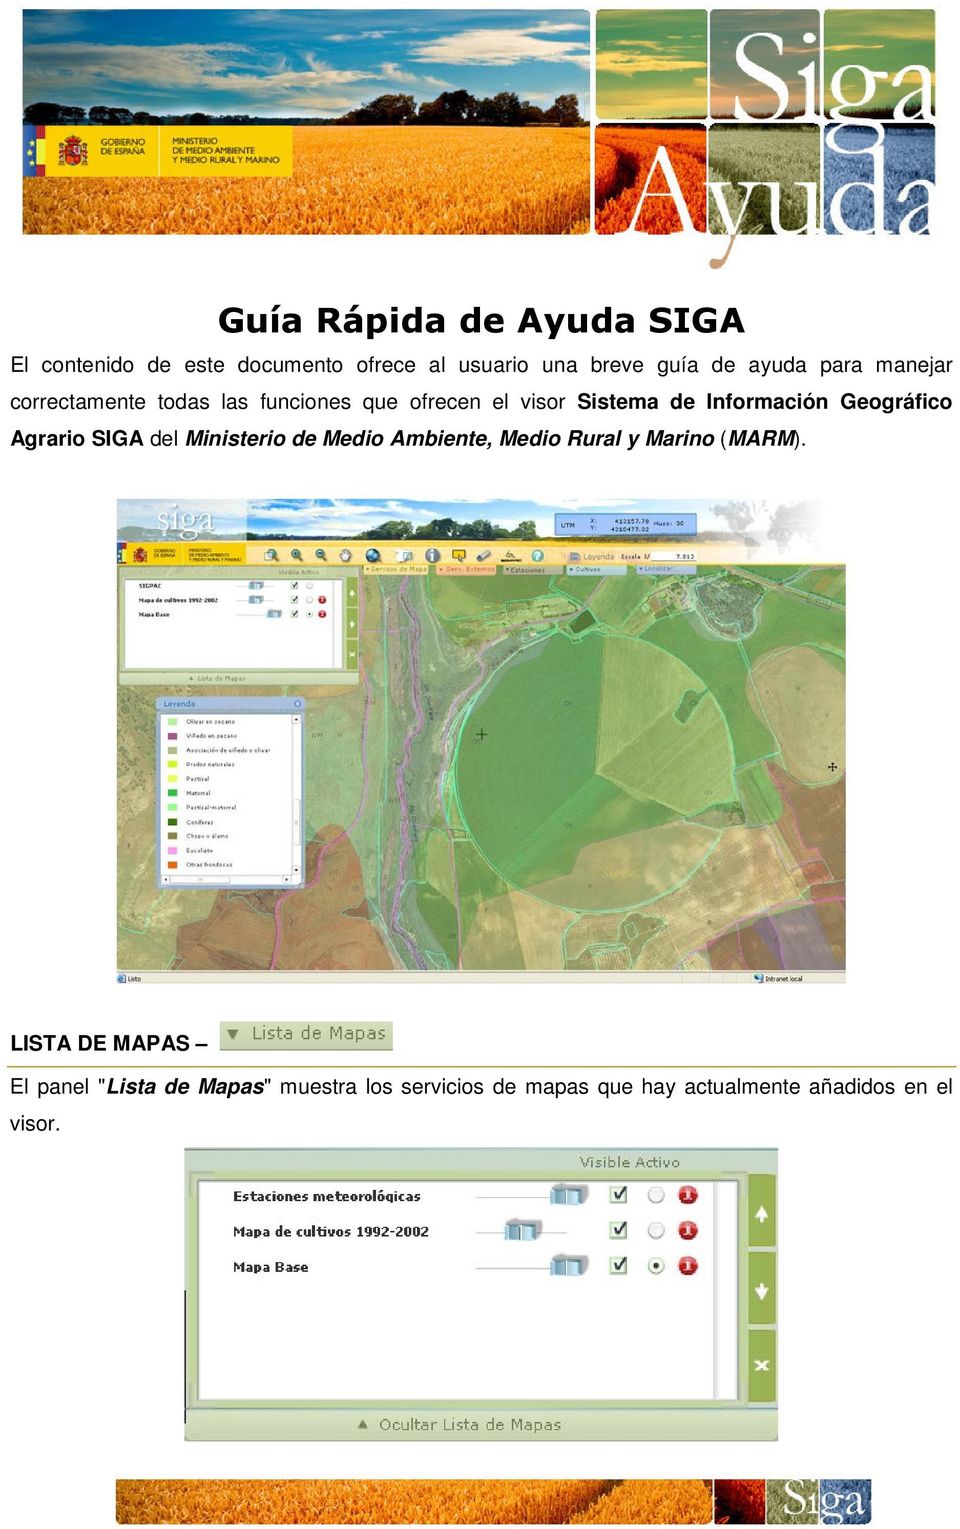 Geográfico Agrario SIGA del Ministerio de Medio Ambiente, Medio Rural y Marino (MARM).